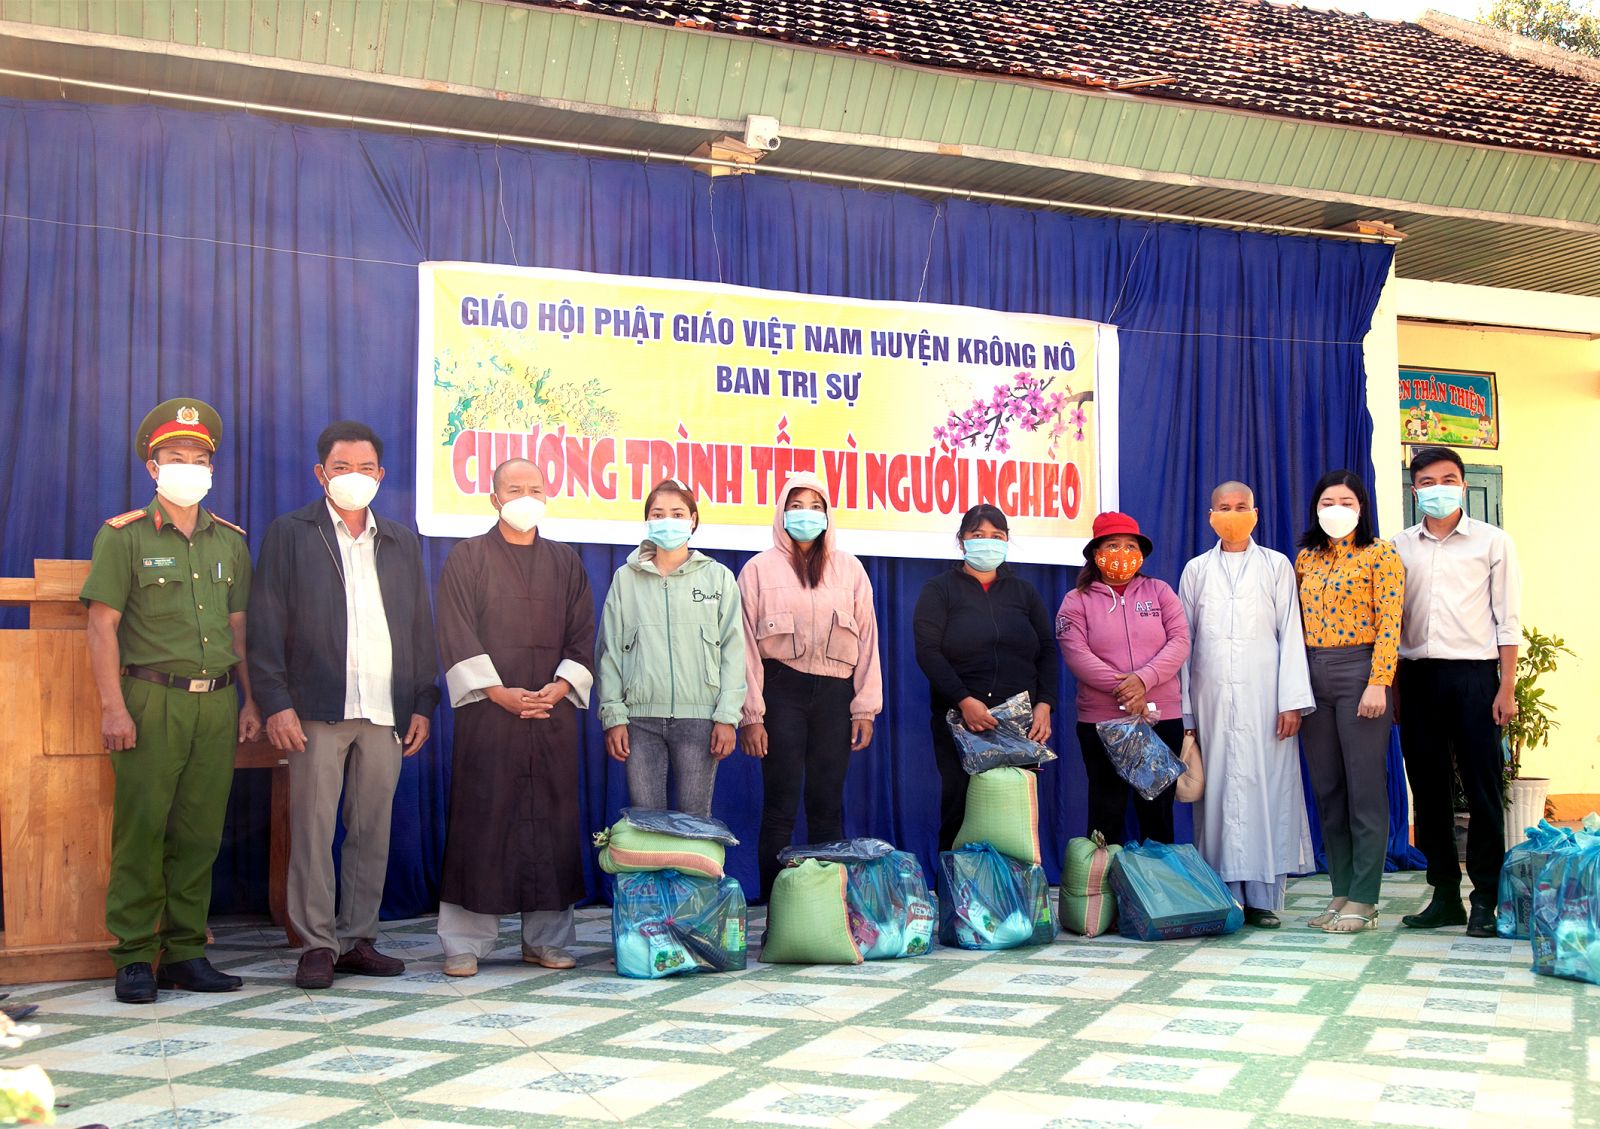 Krông Nô – Ban trị sự PG  huyện Krông Nô tặng quà tết cho người nghèo nhân dịp tết đến xuân về.